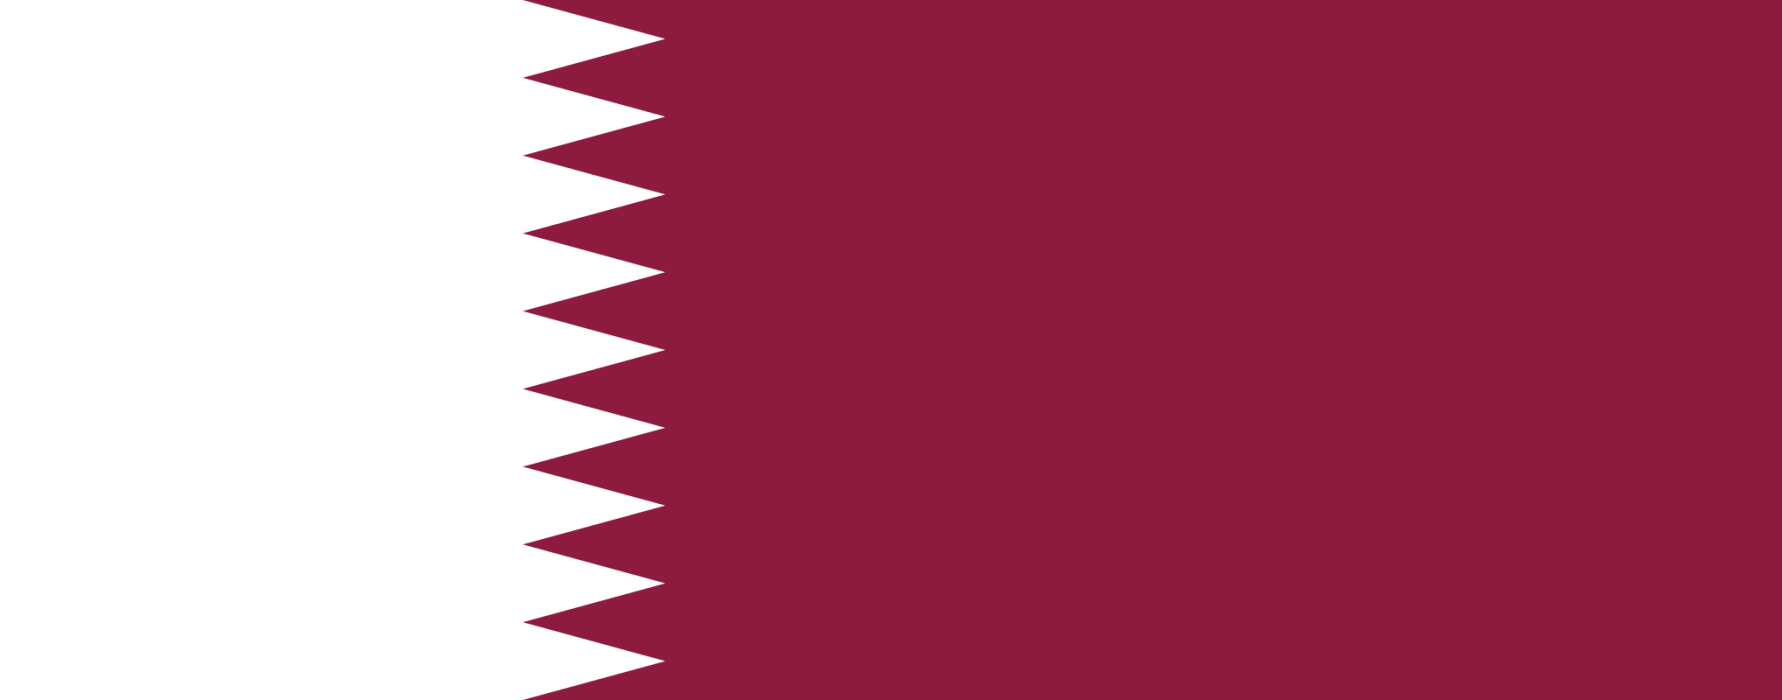 پرچم قطر.png